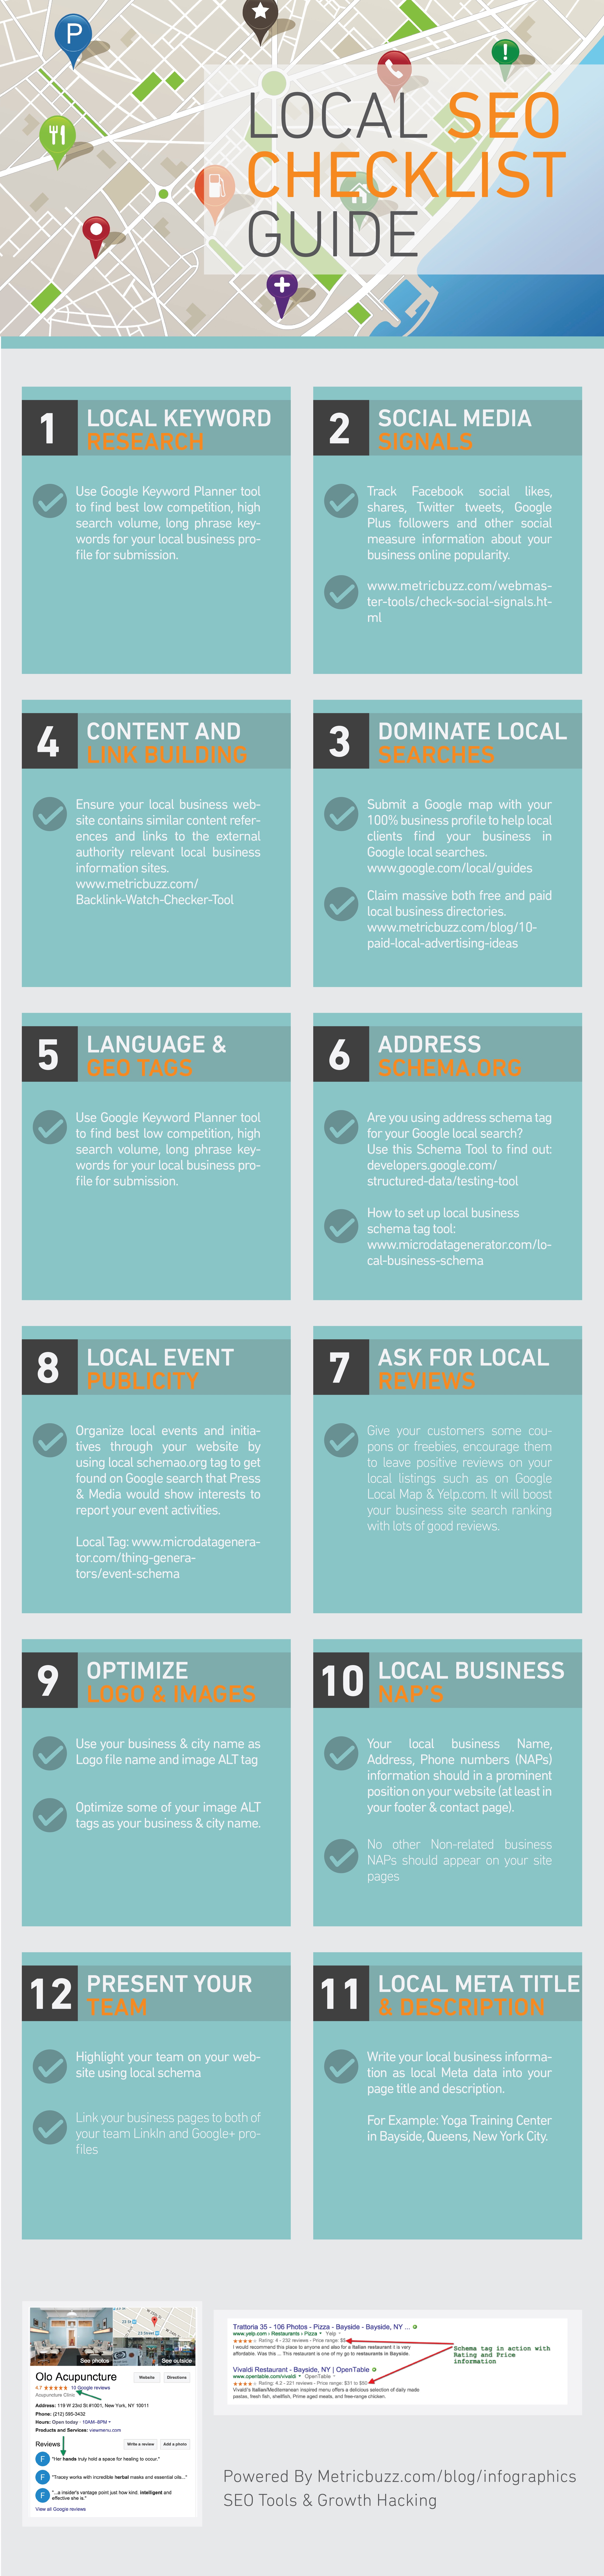 local SEO checklist Guide